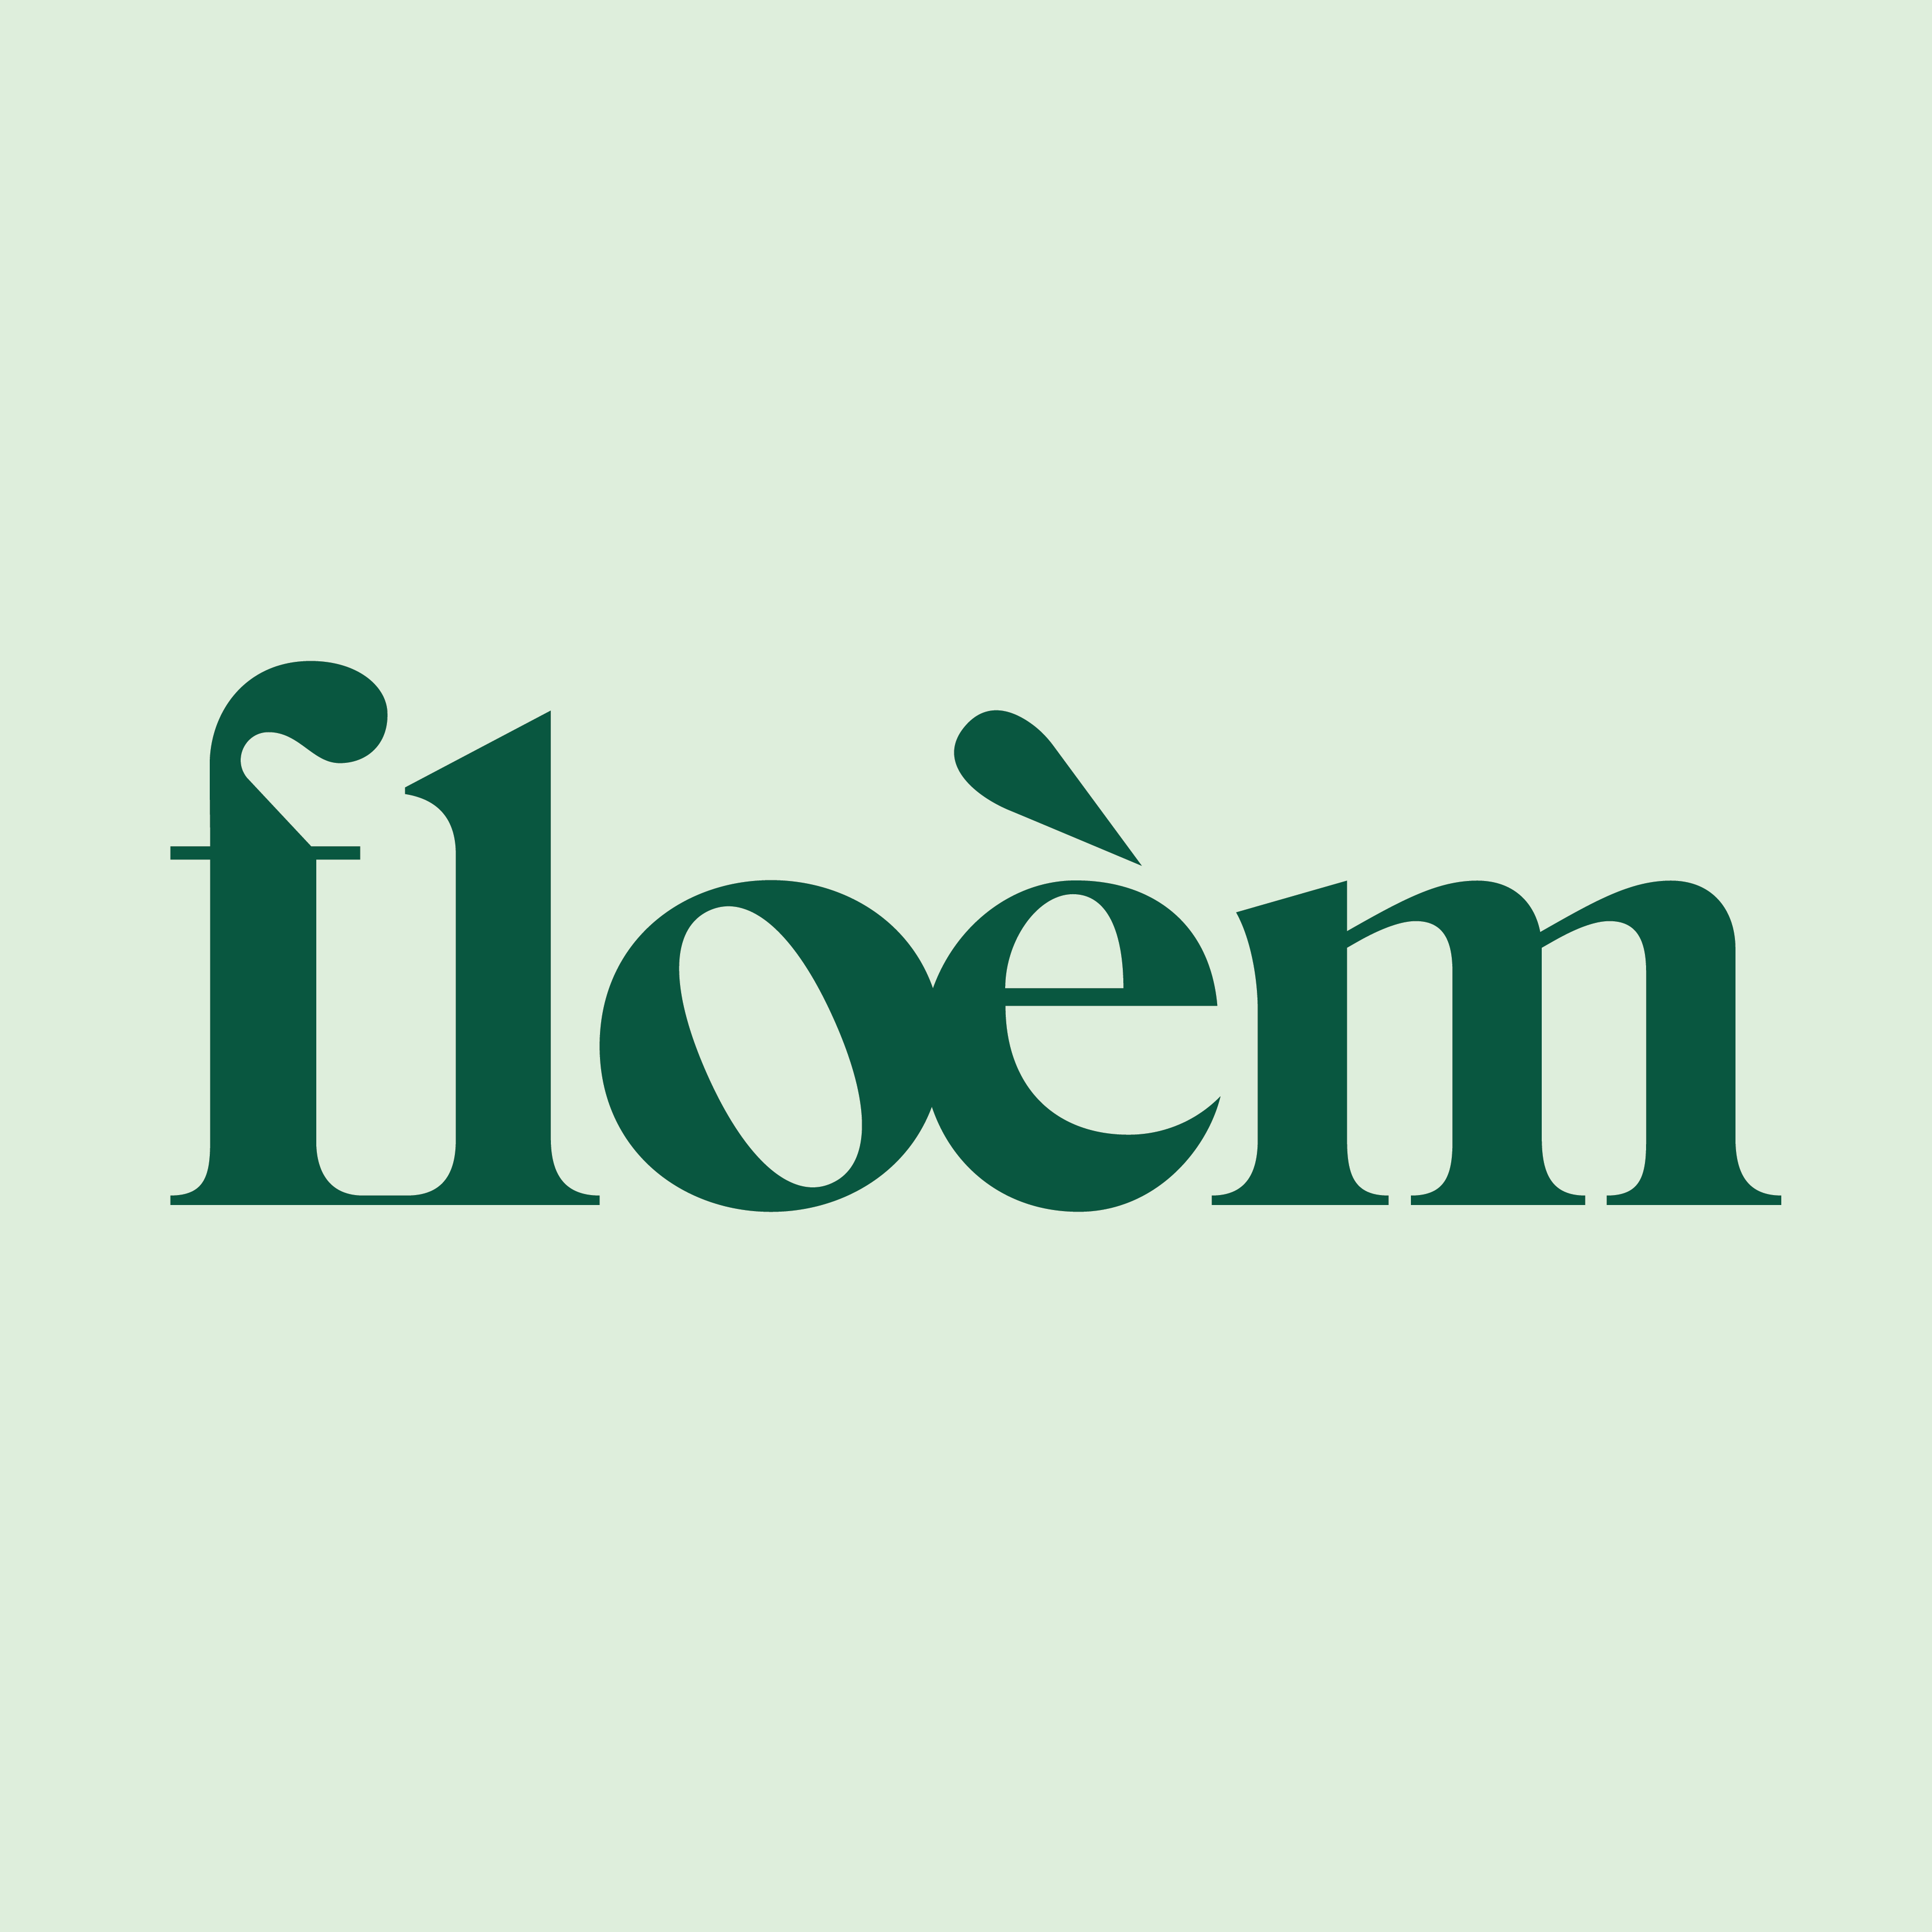 Floèm à Montréal offre des produits et service dans la région de Montréal tels que : Pour la maison, Pour les entreprises, Cadeaux, Fabricant, Fournisseur et notre répertoire des entreprises québécoises est fier de présenter Floèm à Montréal en Montréal.